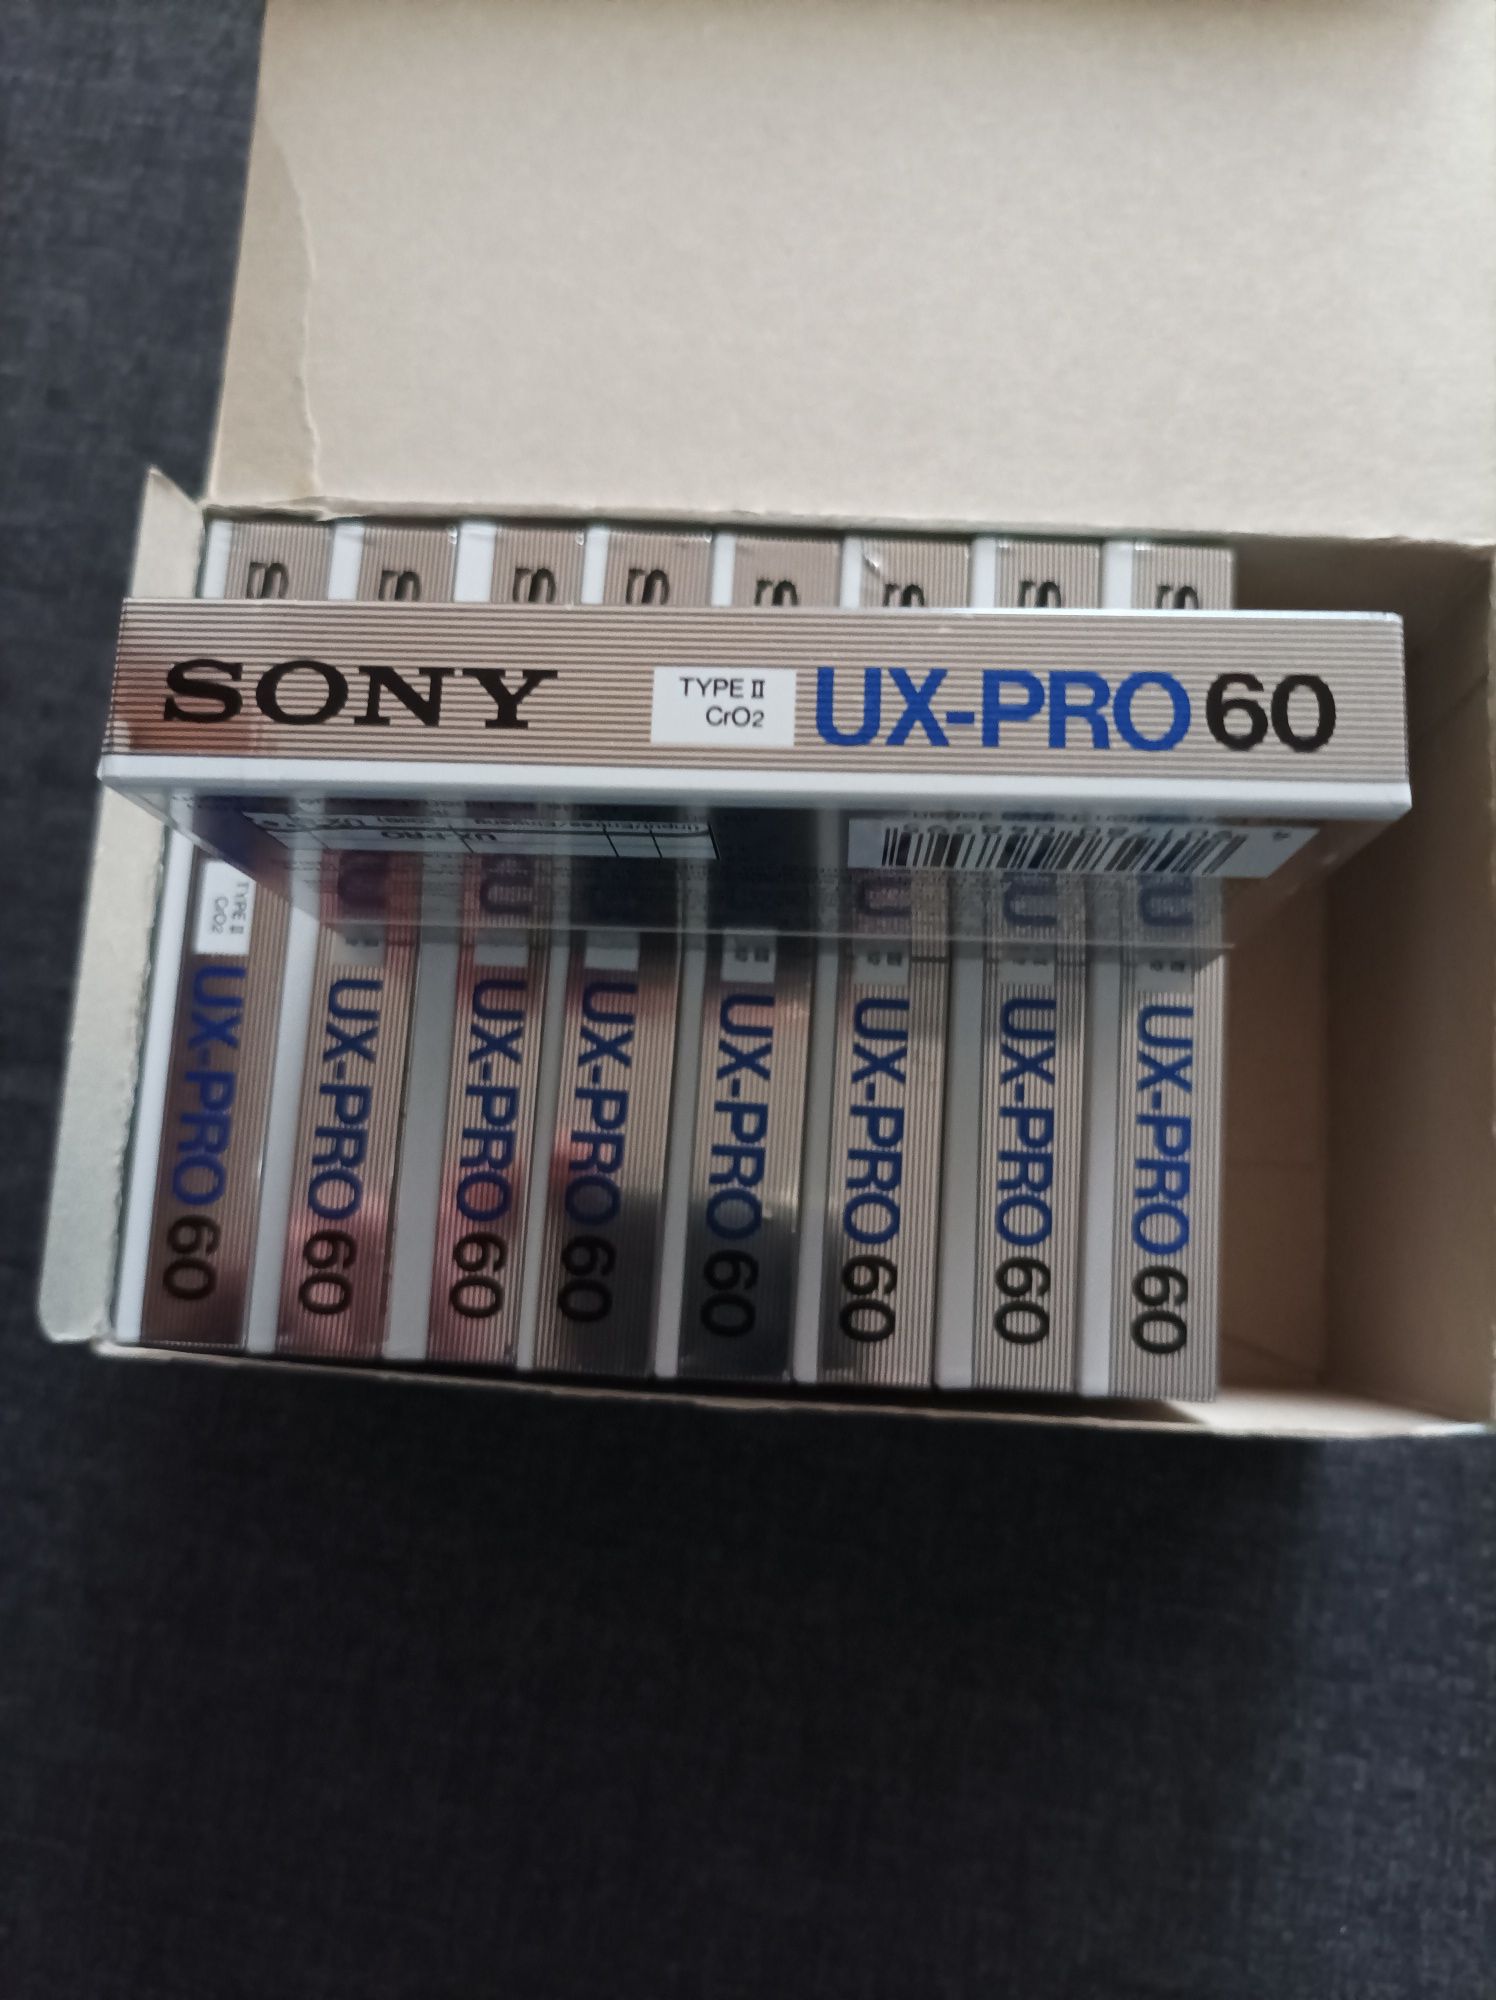 Kaseta SONY UX -PRO 60 Super Chrom CrO2, 1986 r. ,cena za 1 kasetę